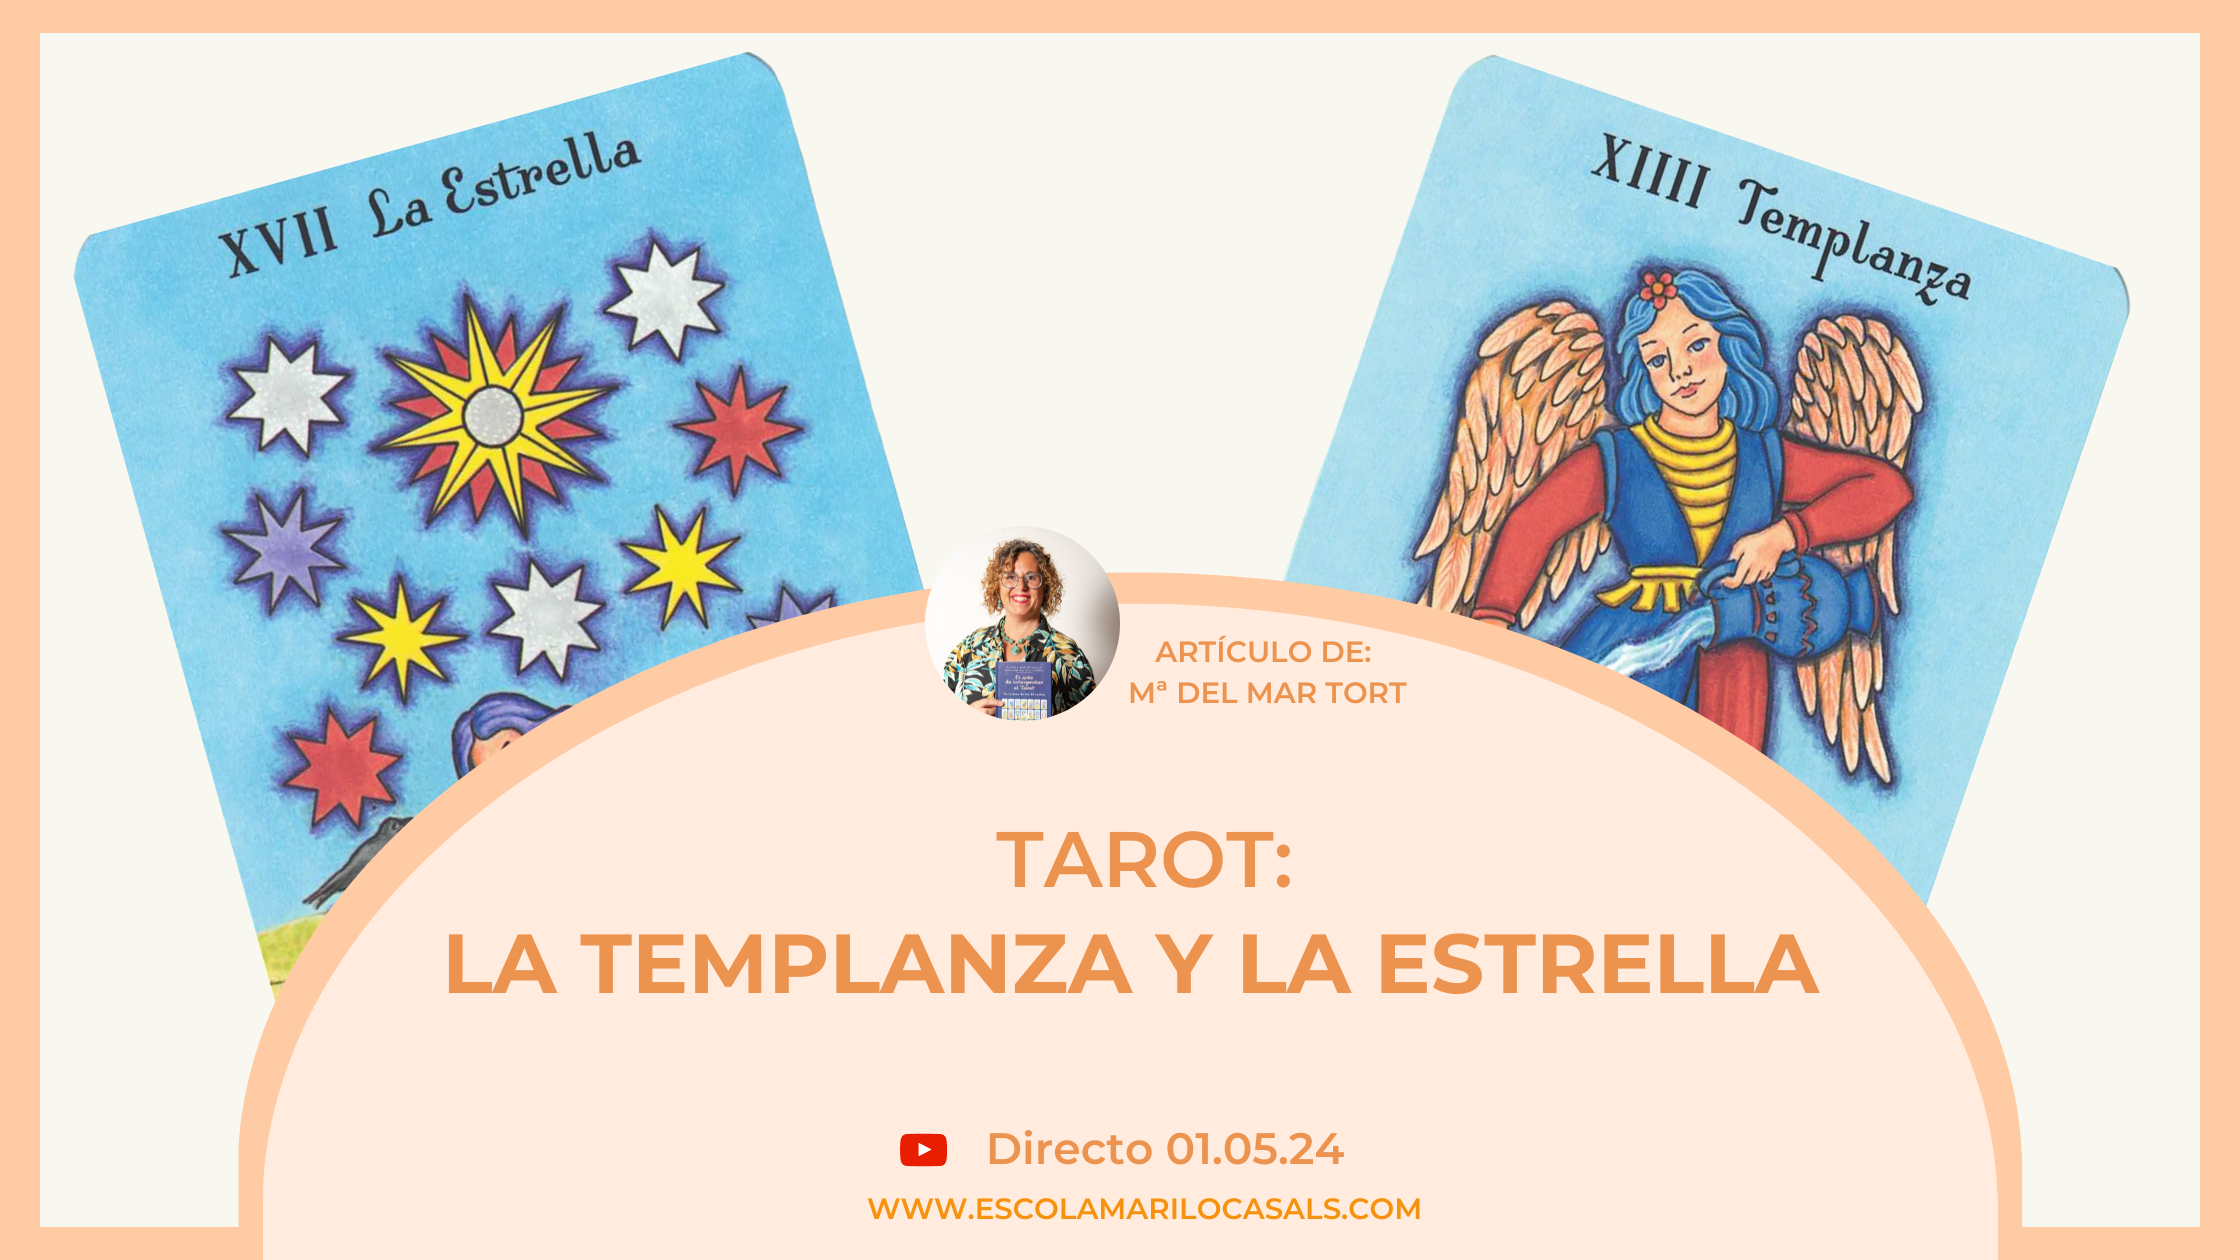 Mª del Mar Tort, directora y profesora de Tarot de Escola Mariló Casals, nos habla de dos arcanos mayores: La Estrella y la Templanza